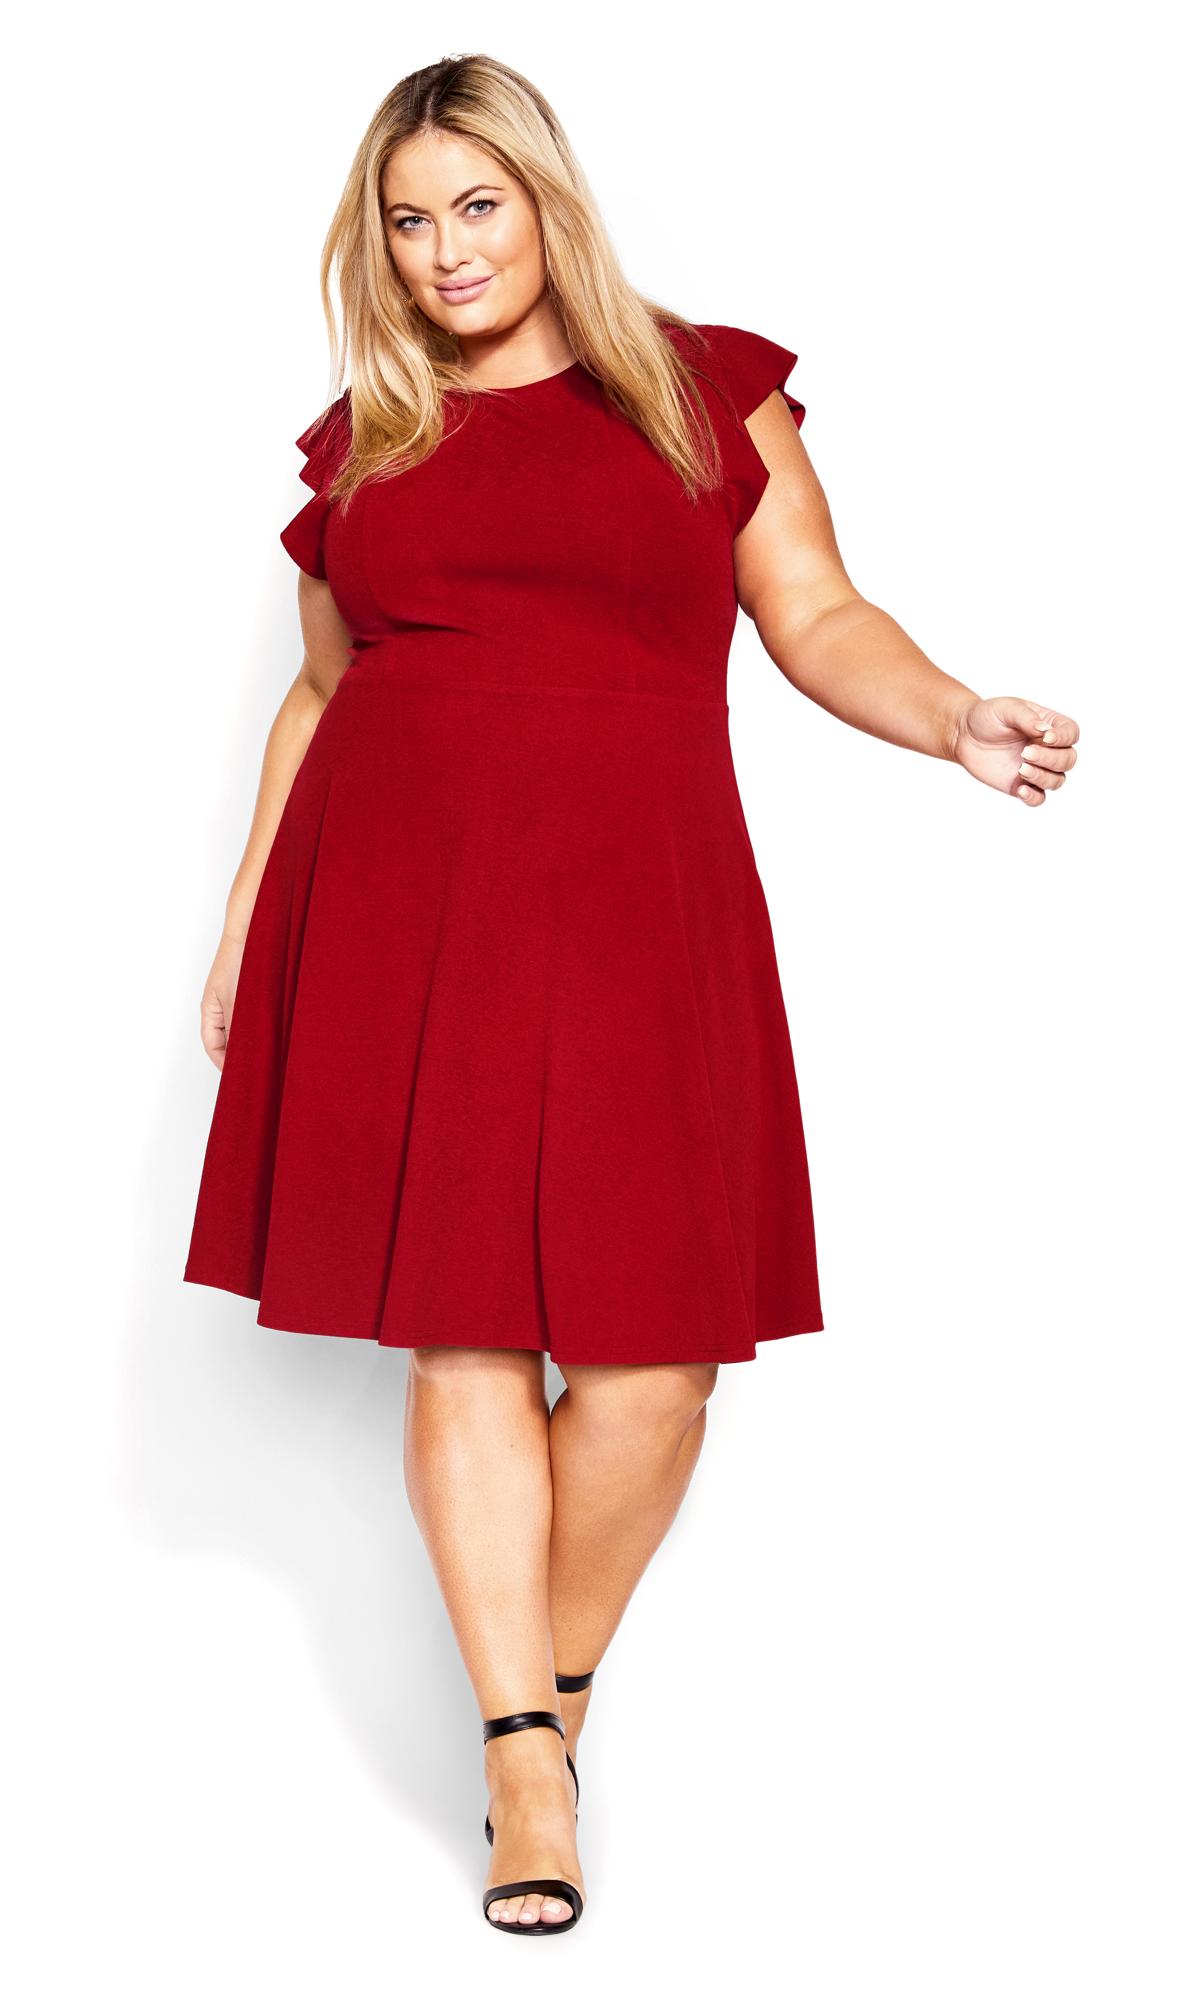 Skylar True Red Dress 3